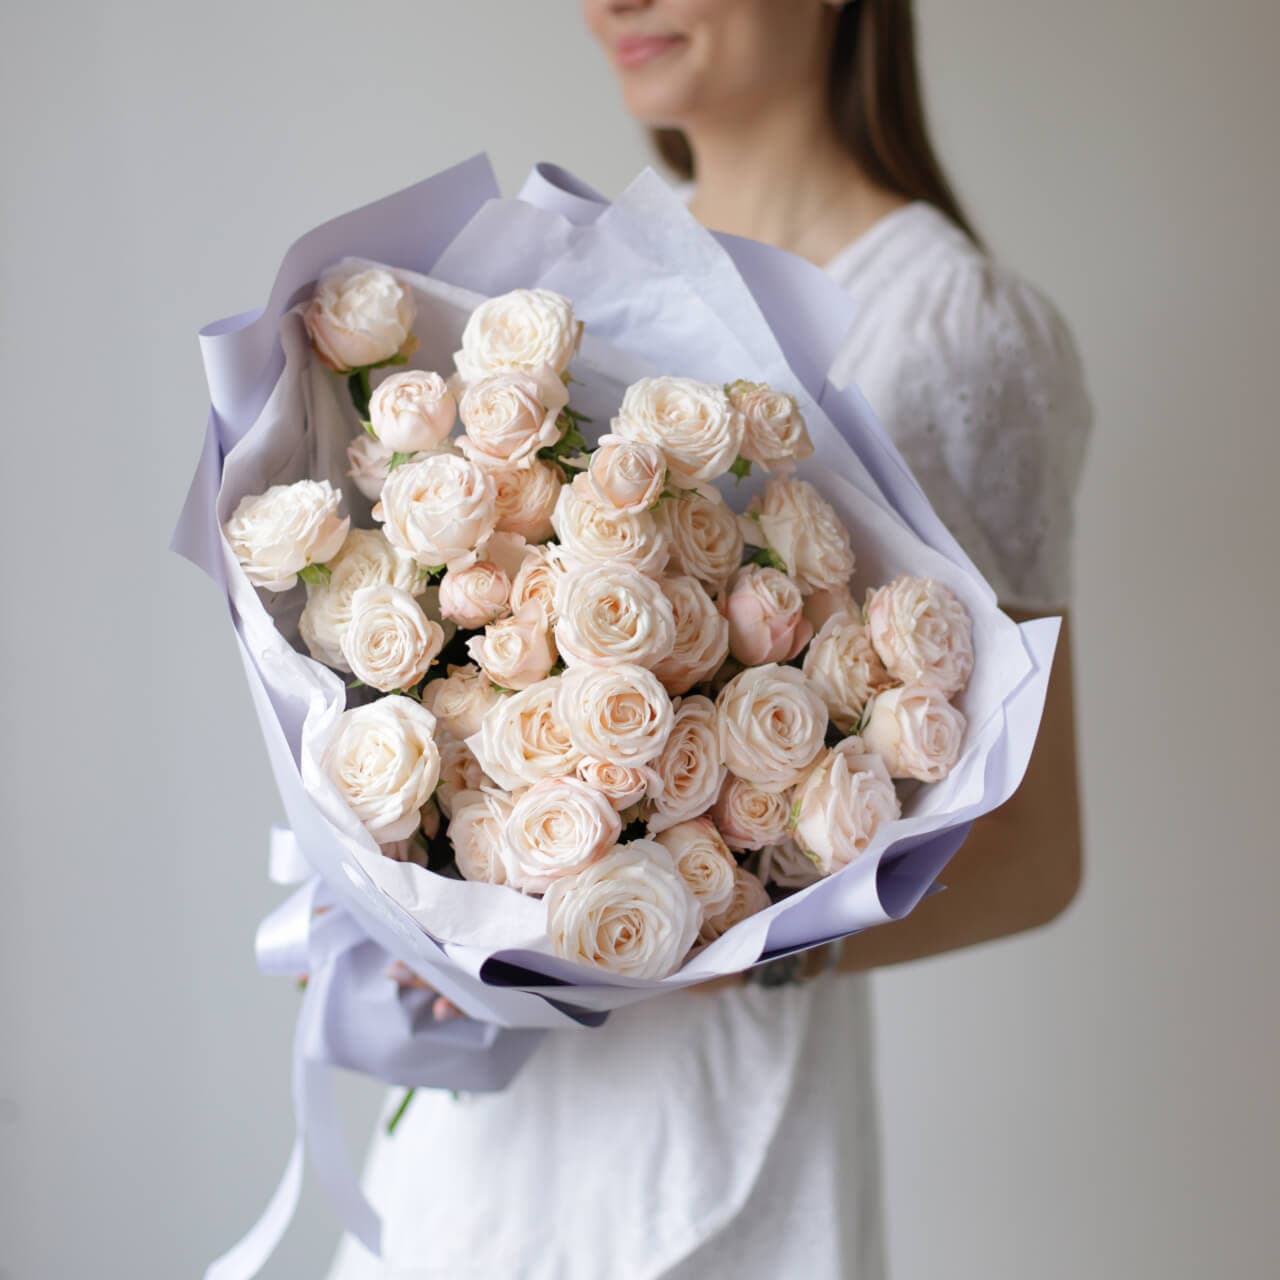 Кустовые пионовидные розы кремового оттенка в лавандовом оформлении №1494 - Фото 22